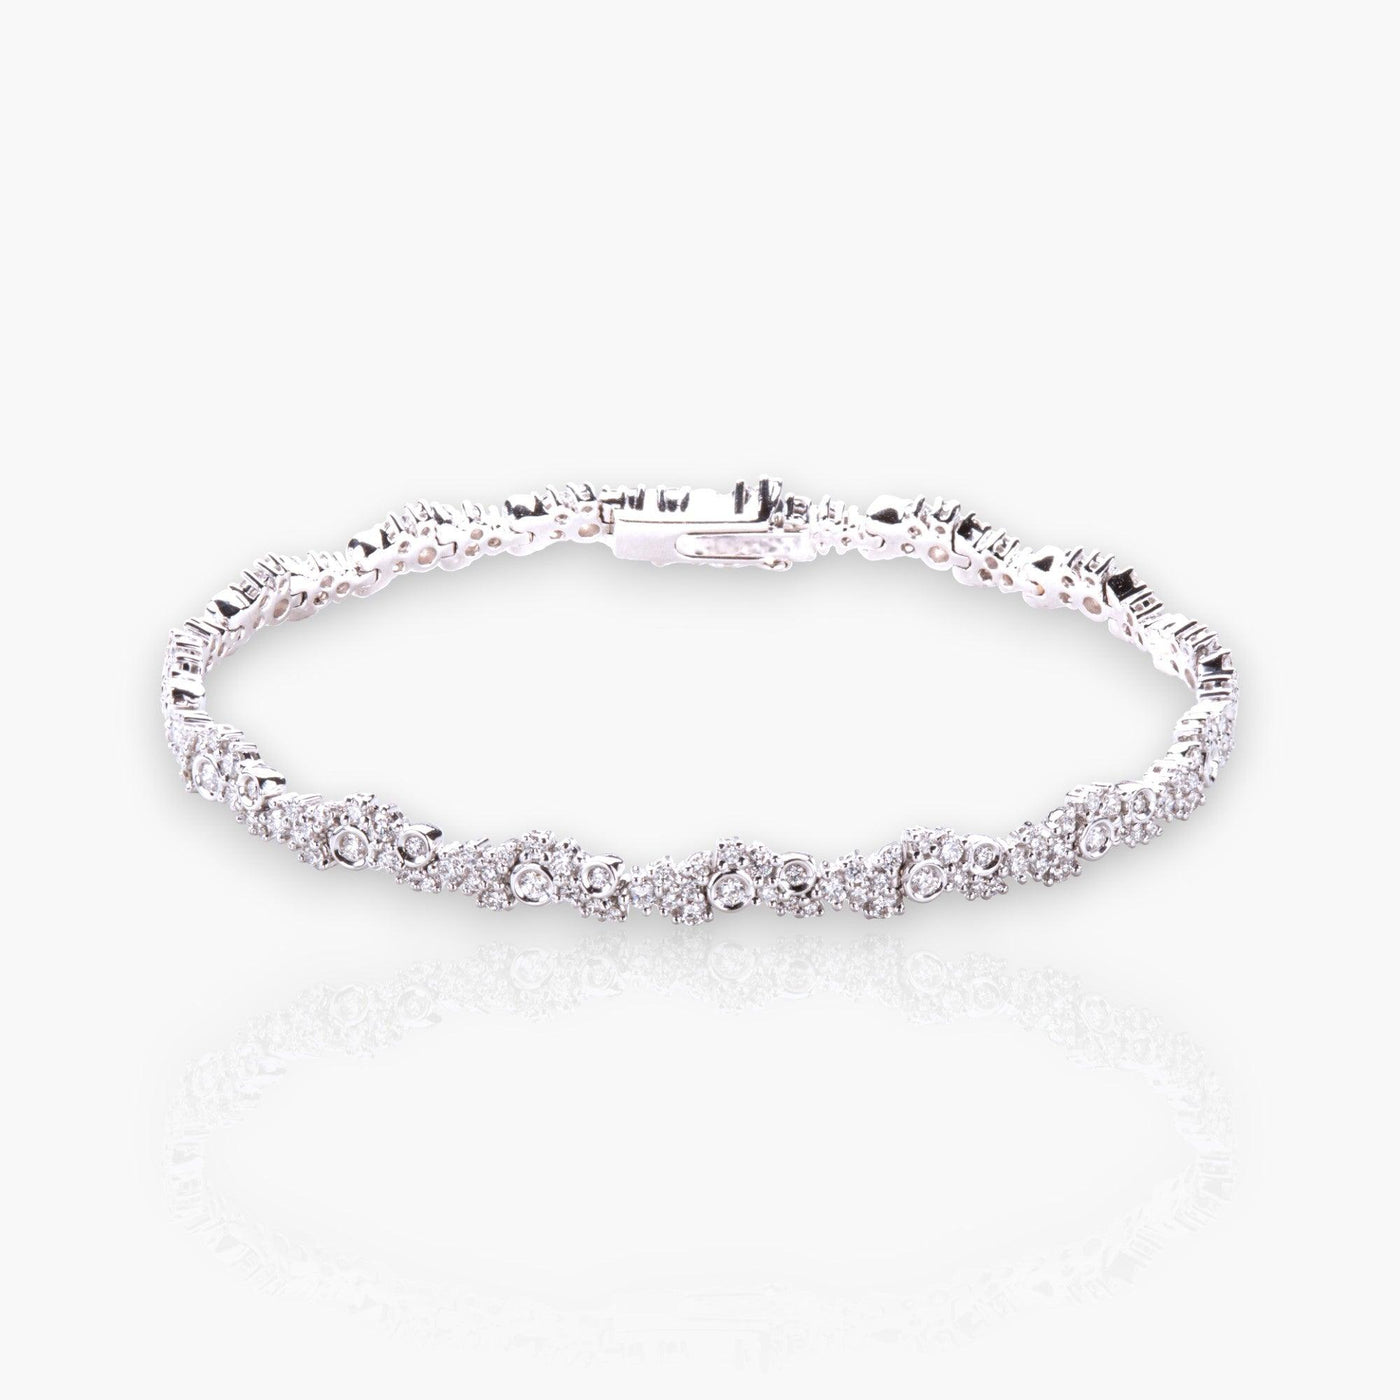 LADY Bracelet with 204 diamonds - Moregola Fine Jewelry